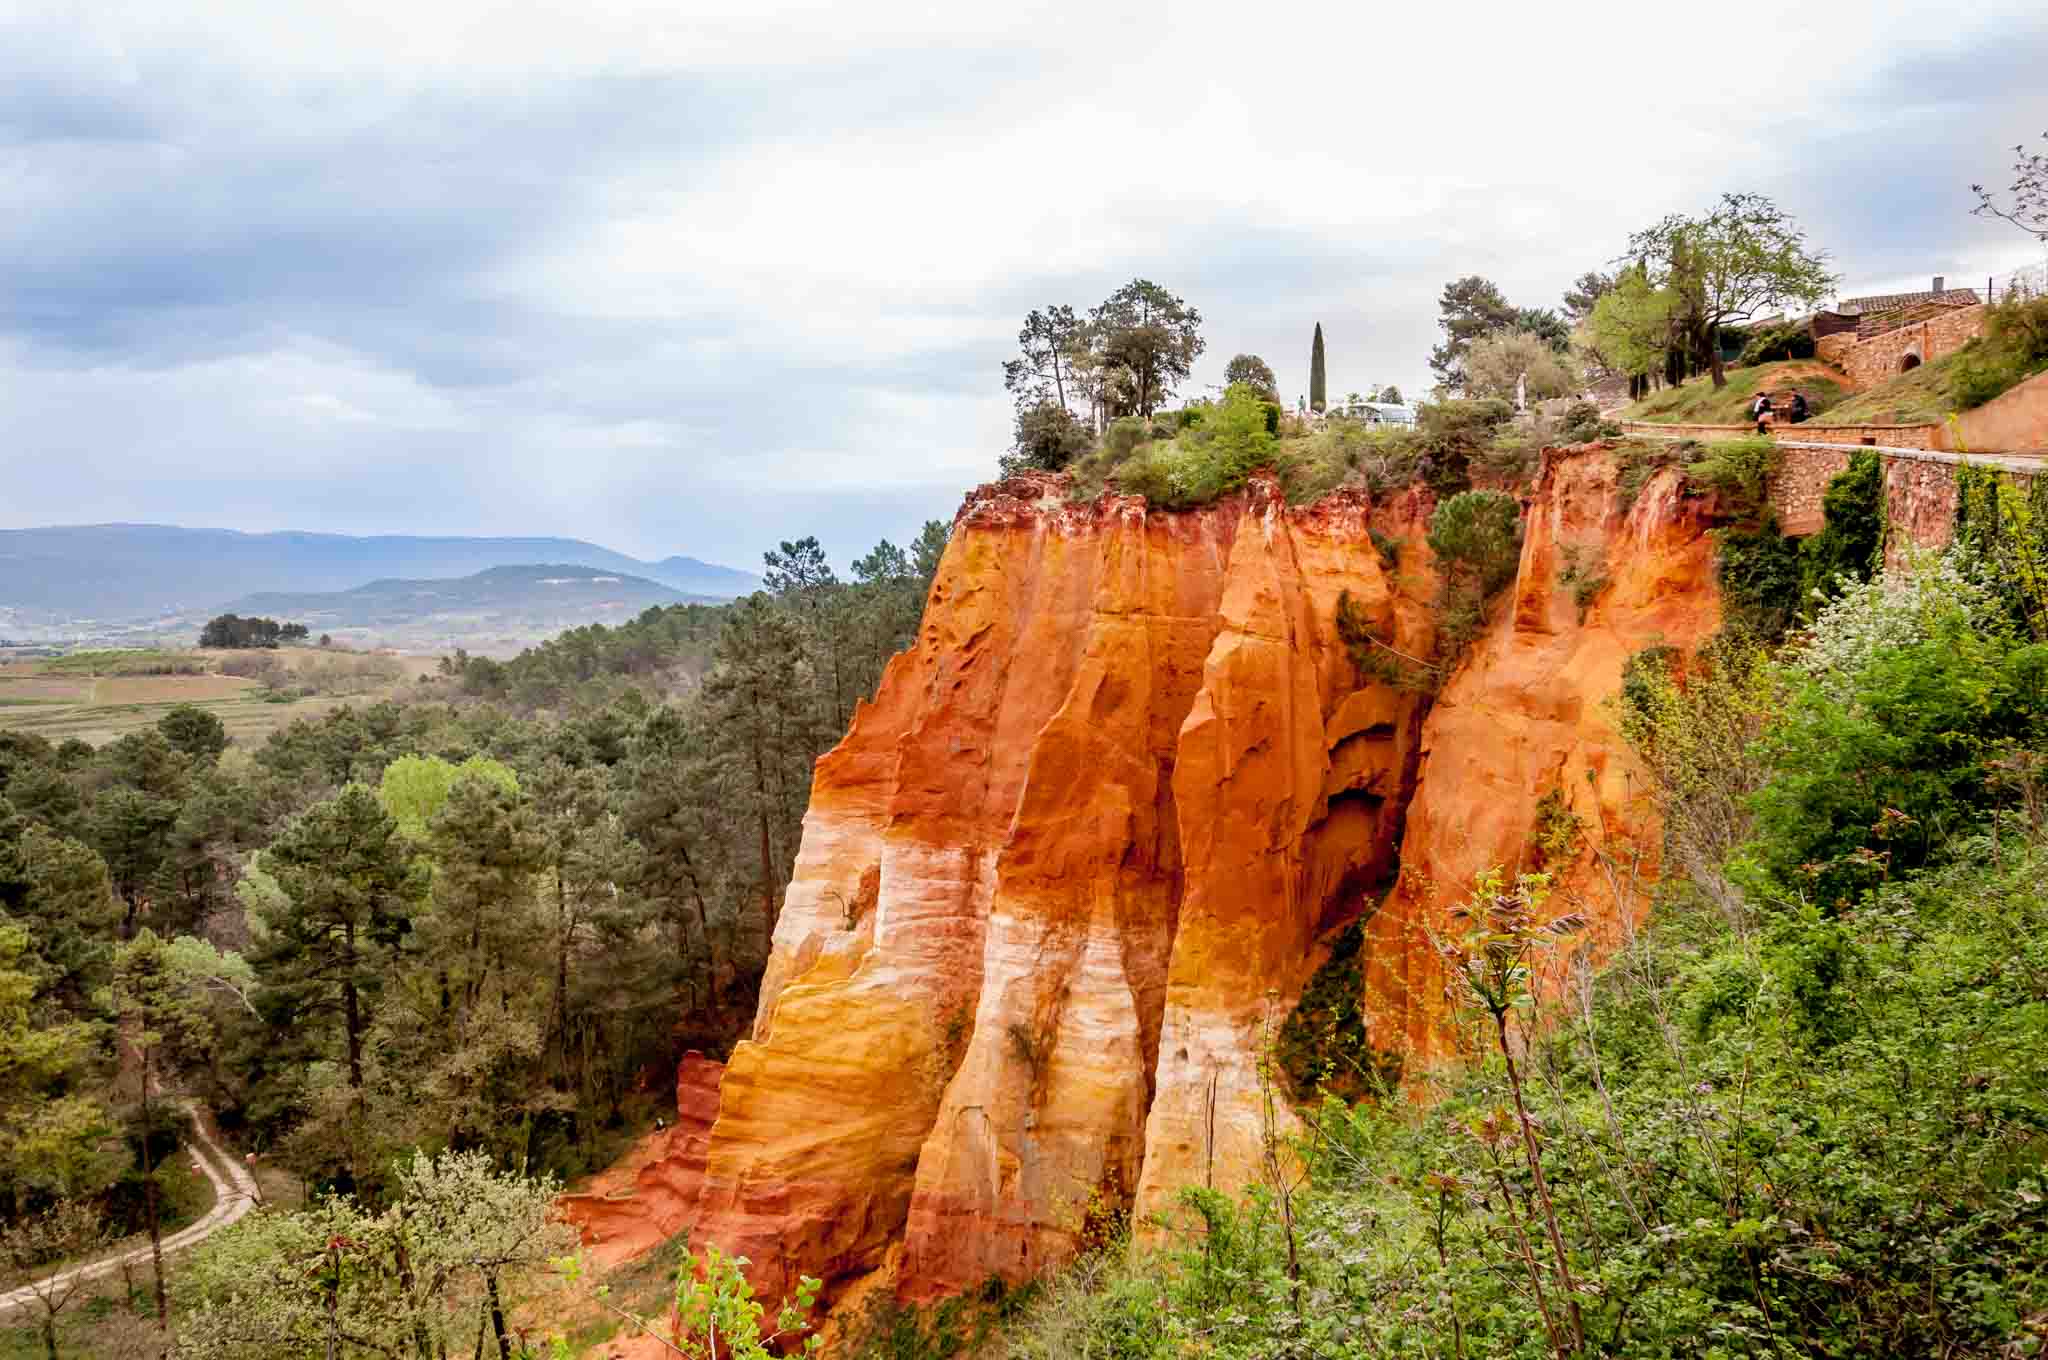 Orange and red ochre cliffs